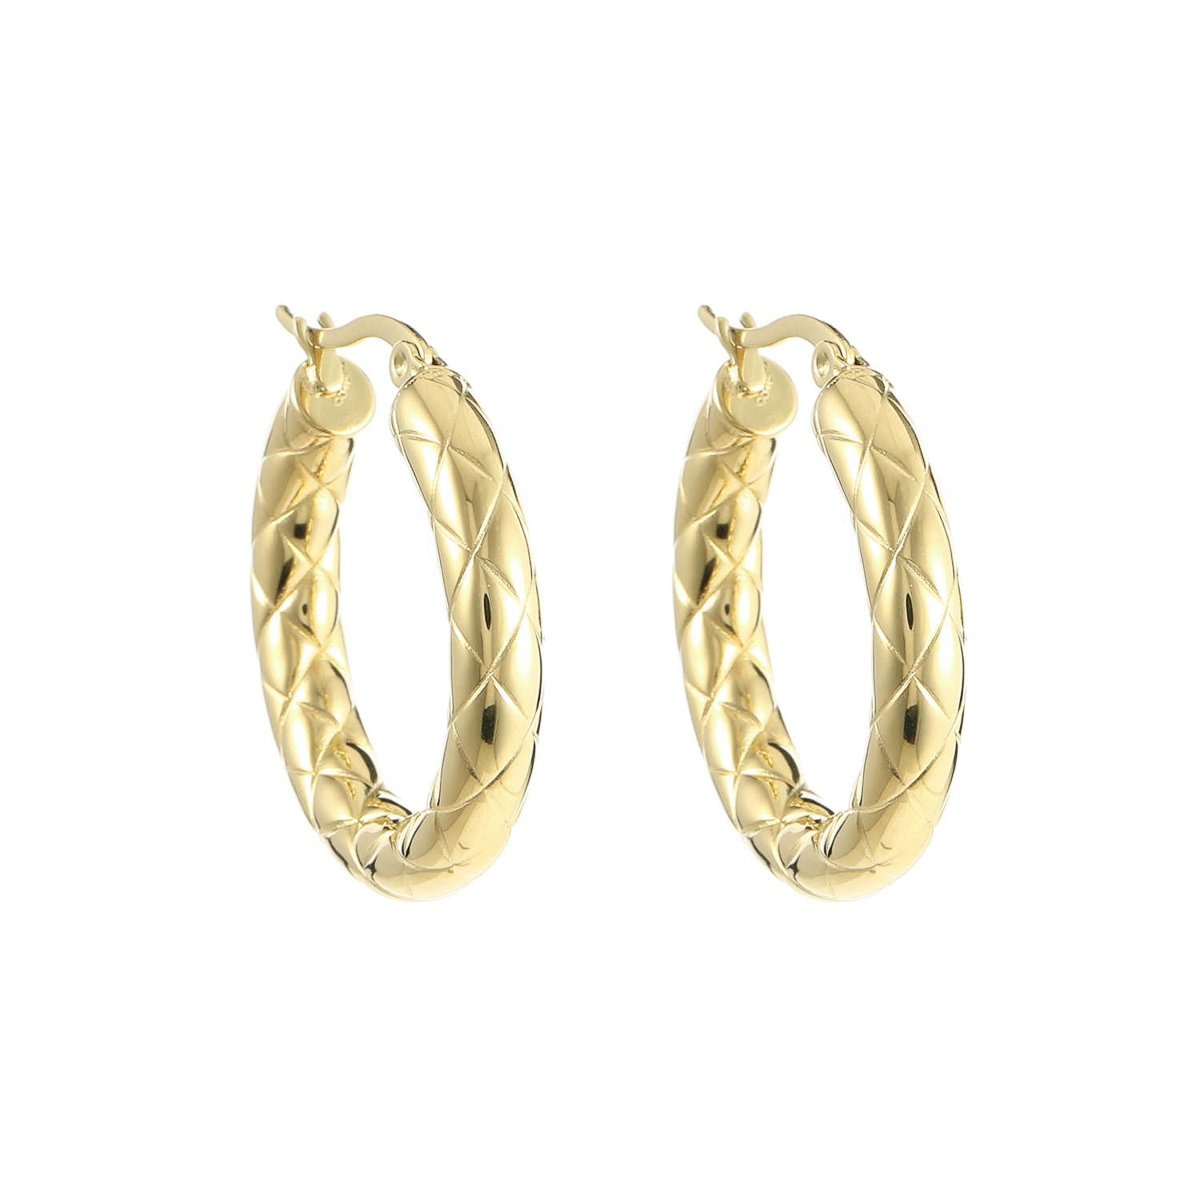 Zola Hoop Earrings Gold - Earrings, Earrings Gold, new arrivals - Zola Hoop Earrings Gold - ANNABO Online Store